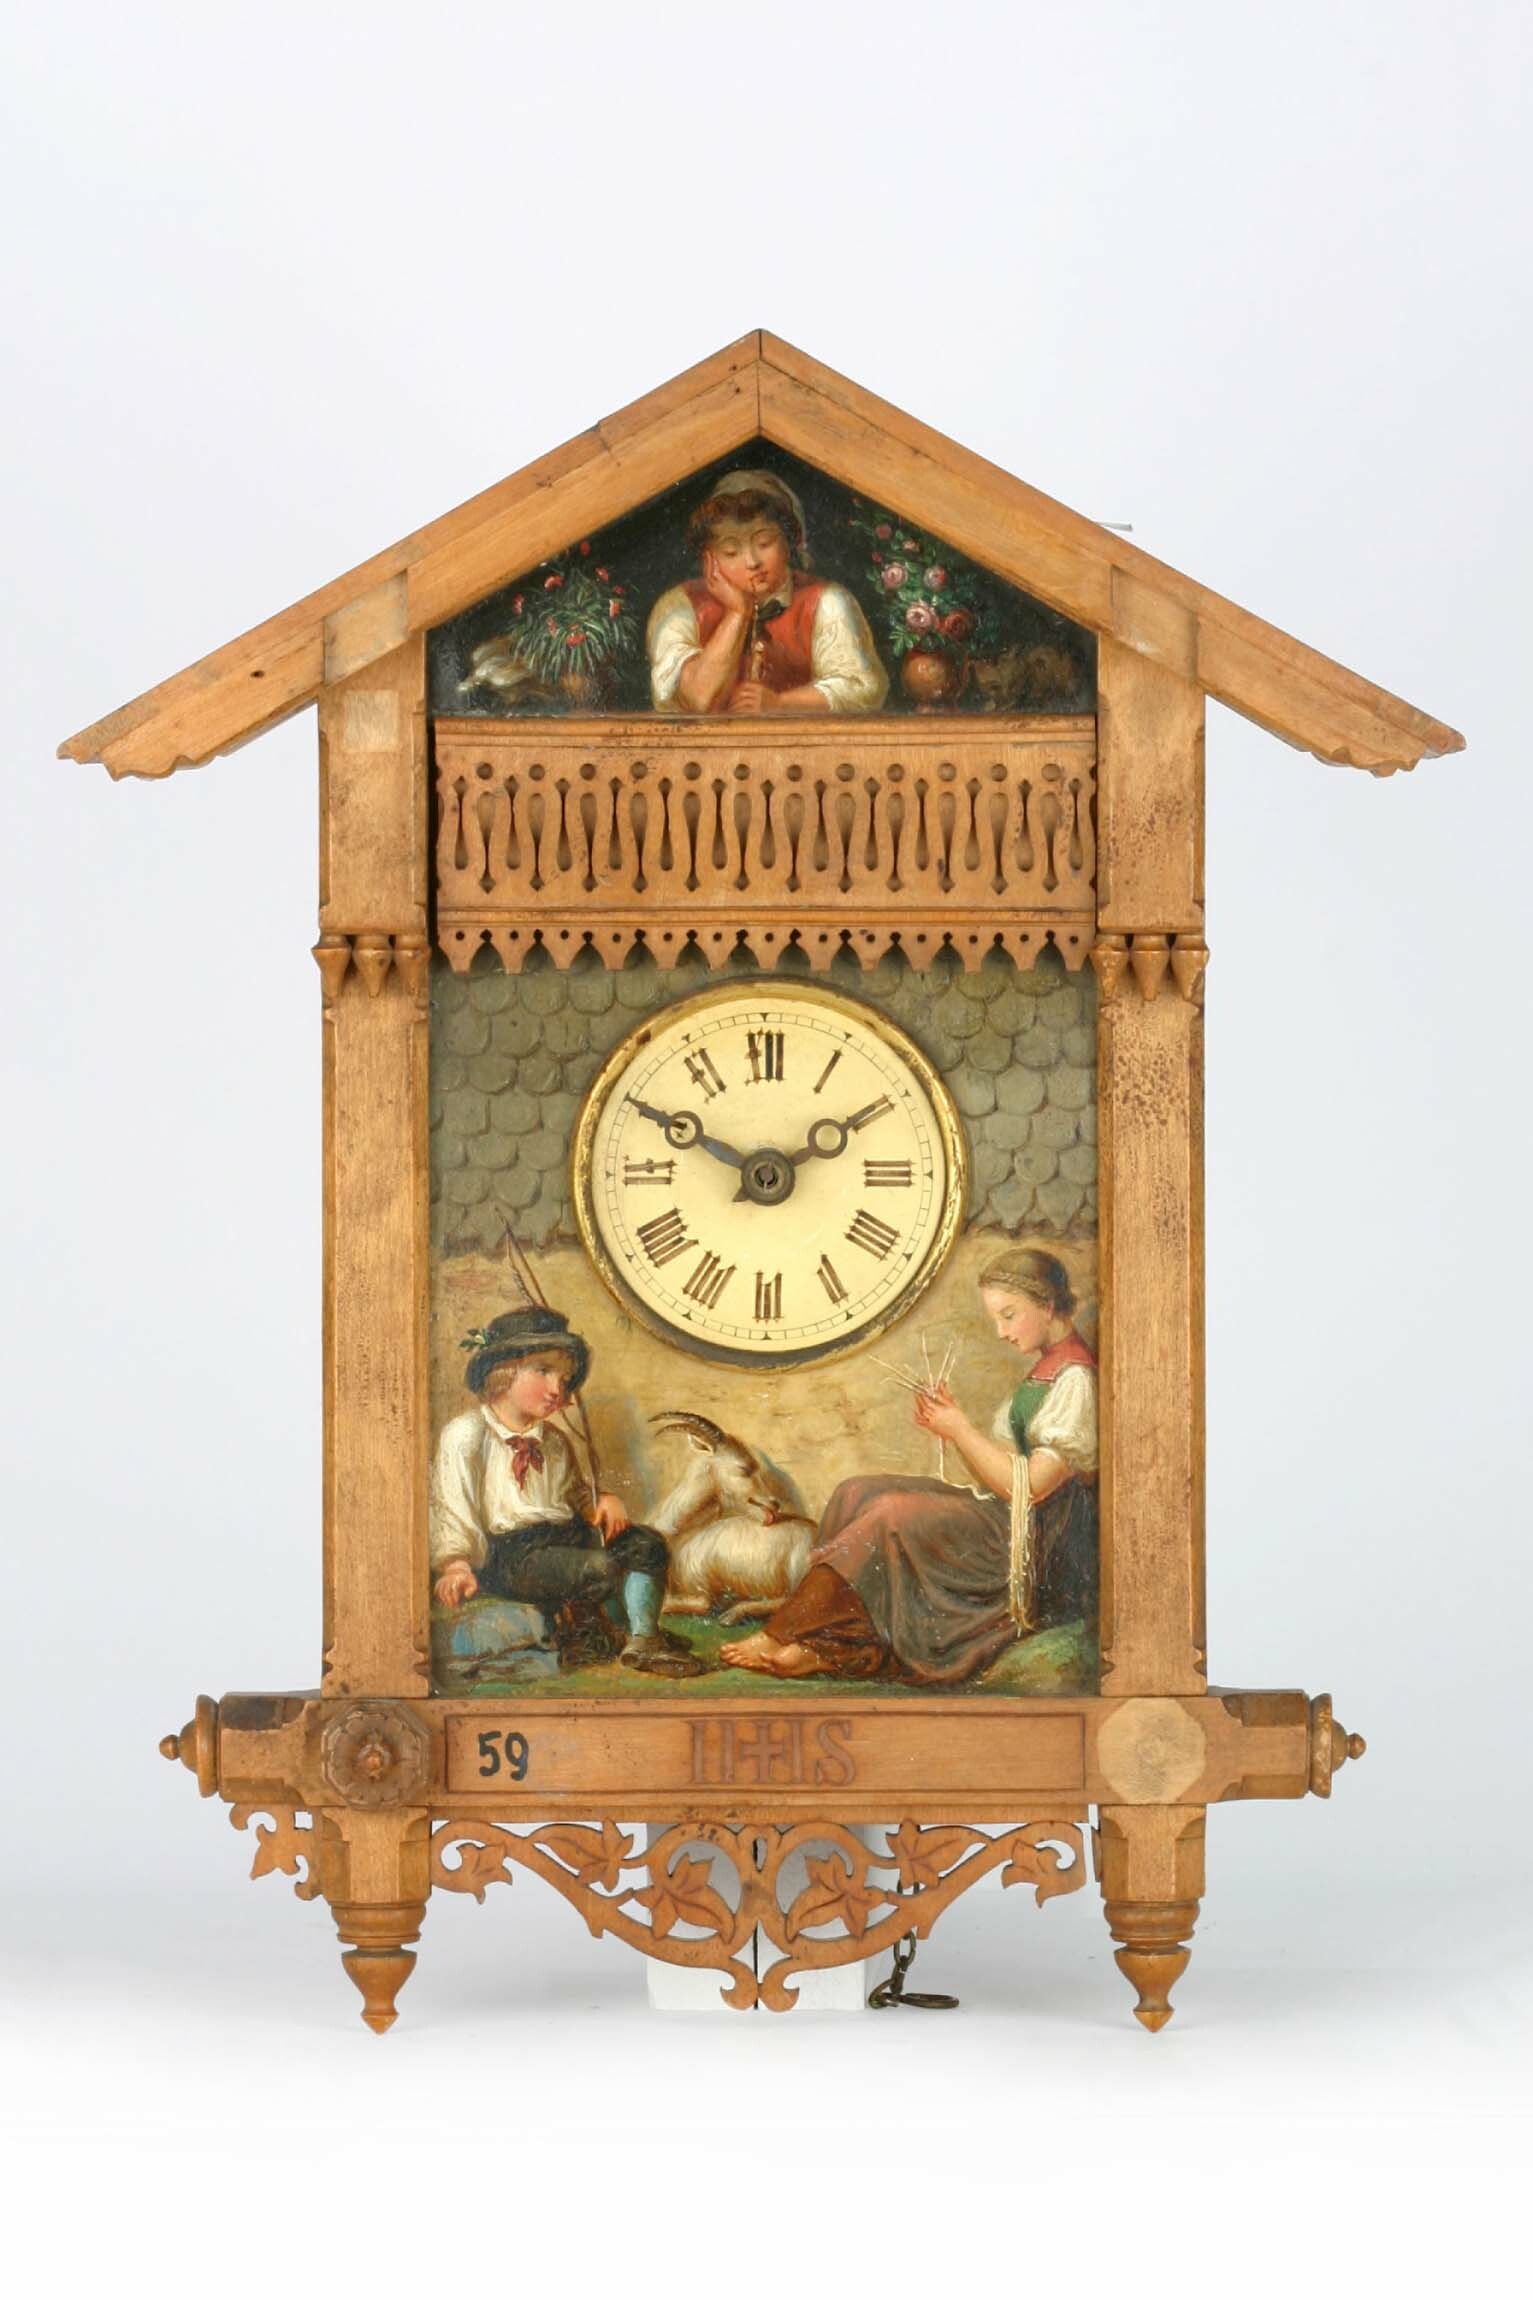 Bahnhäusleuhr, Heinrich Frank, Karlsruhe, Uhrmacherschule Furtwangen, 1861 (Deutsches Uhrenmuseum CC BY-SA)